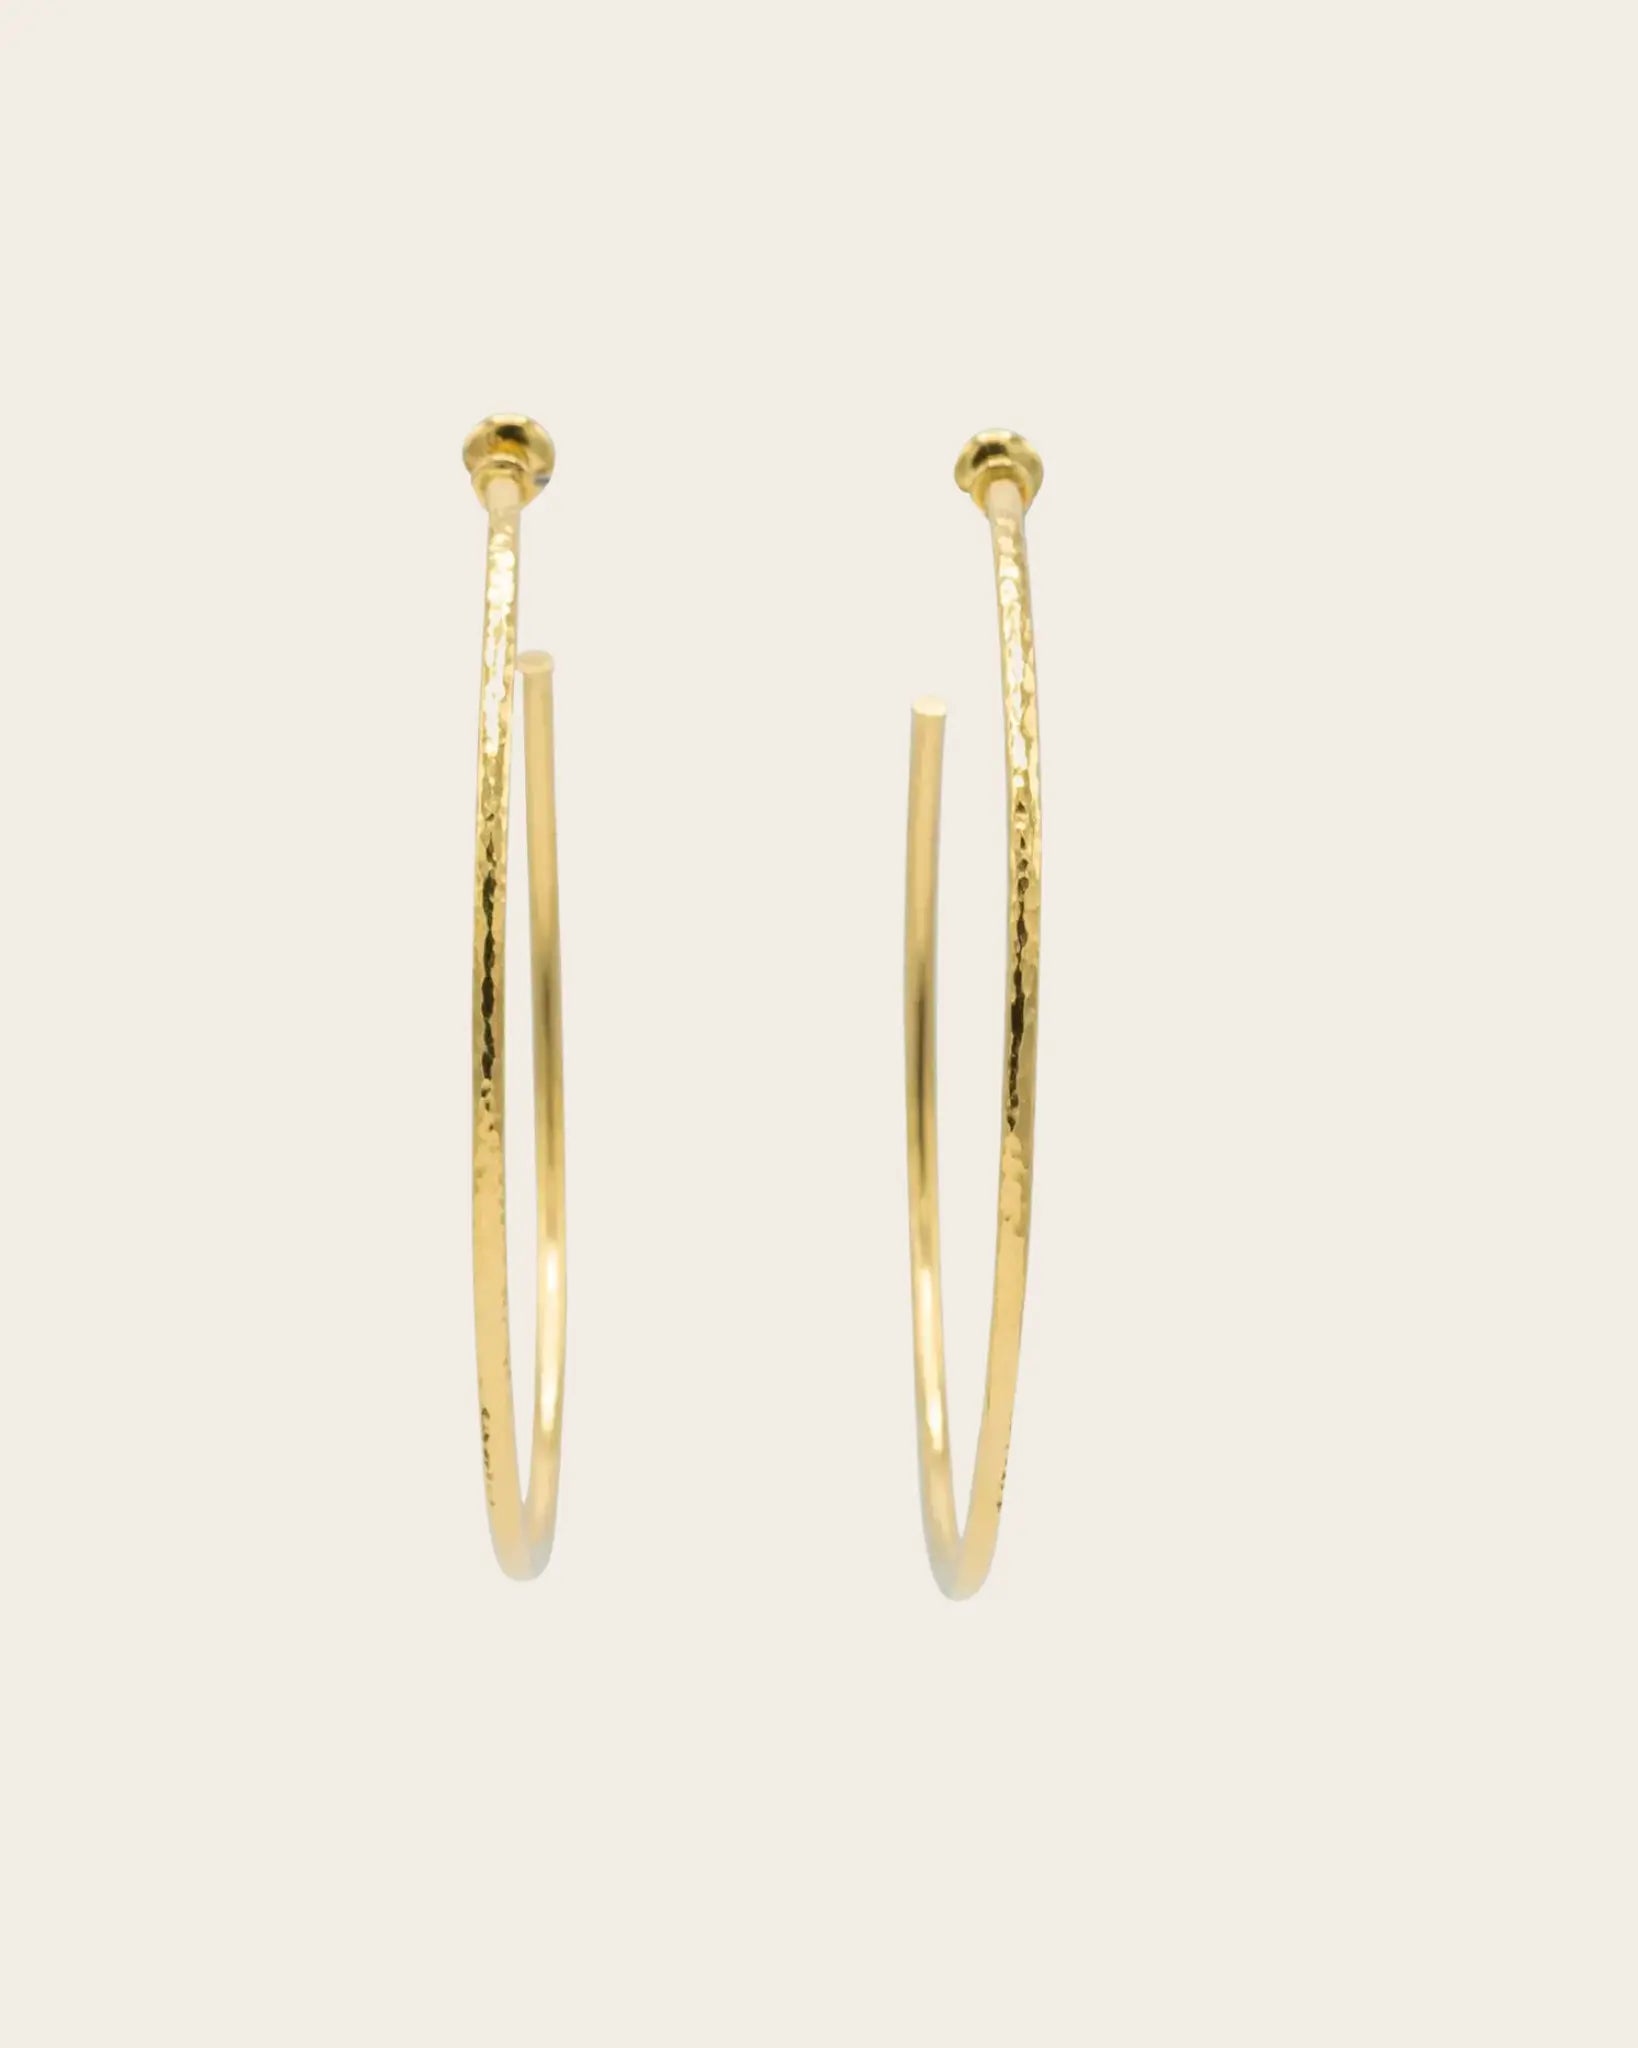 GURHAN Vertigo Gold Hoop Earrings, Large Plain, with No Stone GURHAN Vertigo Gold Hoop Earrings, Large Plain, with No Stone Gurhan Gurhan  Squash Blossom Vail